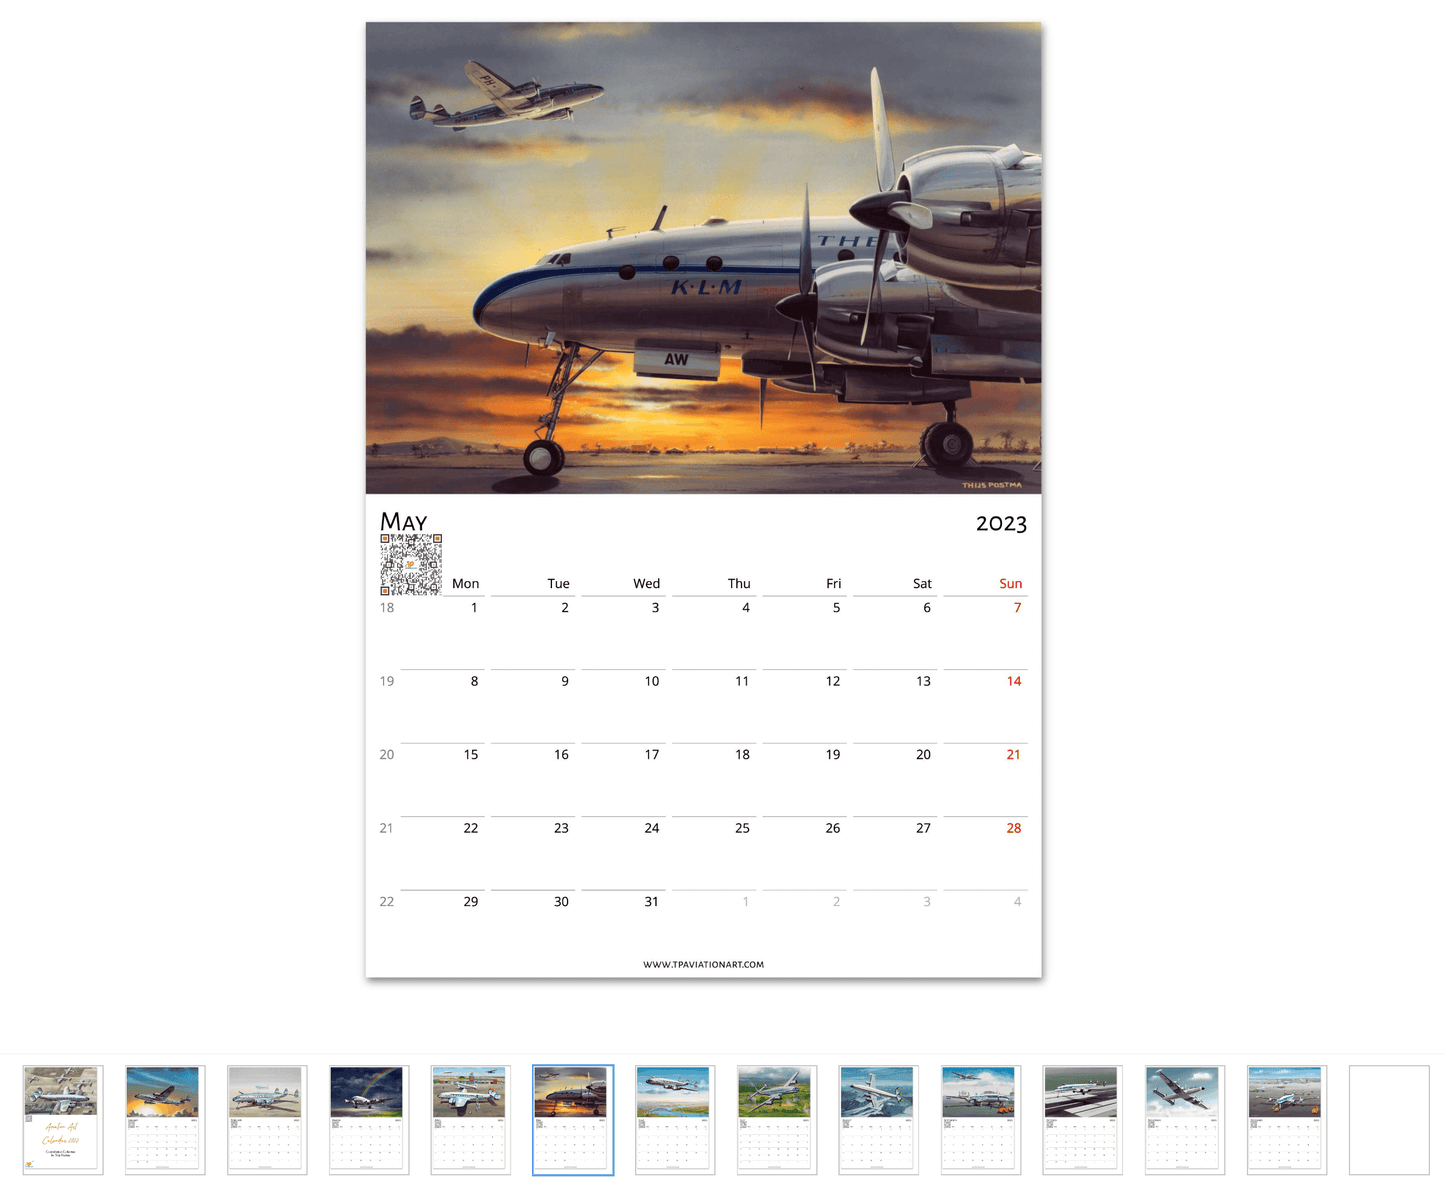 Thijs Postma - Aviation Art Calendar 2023 - Constellation Collection Calendar TP Aviation Art 